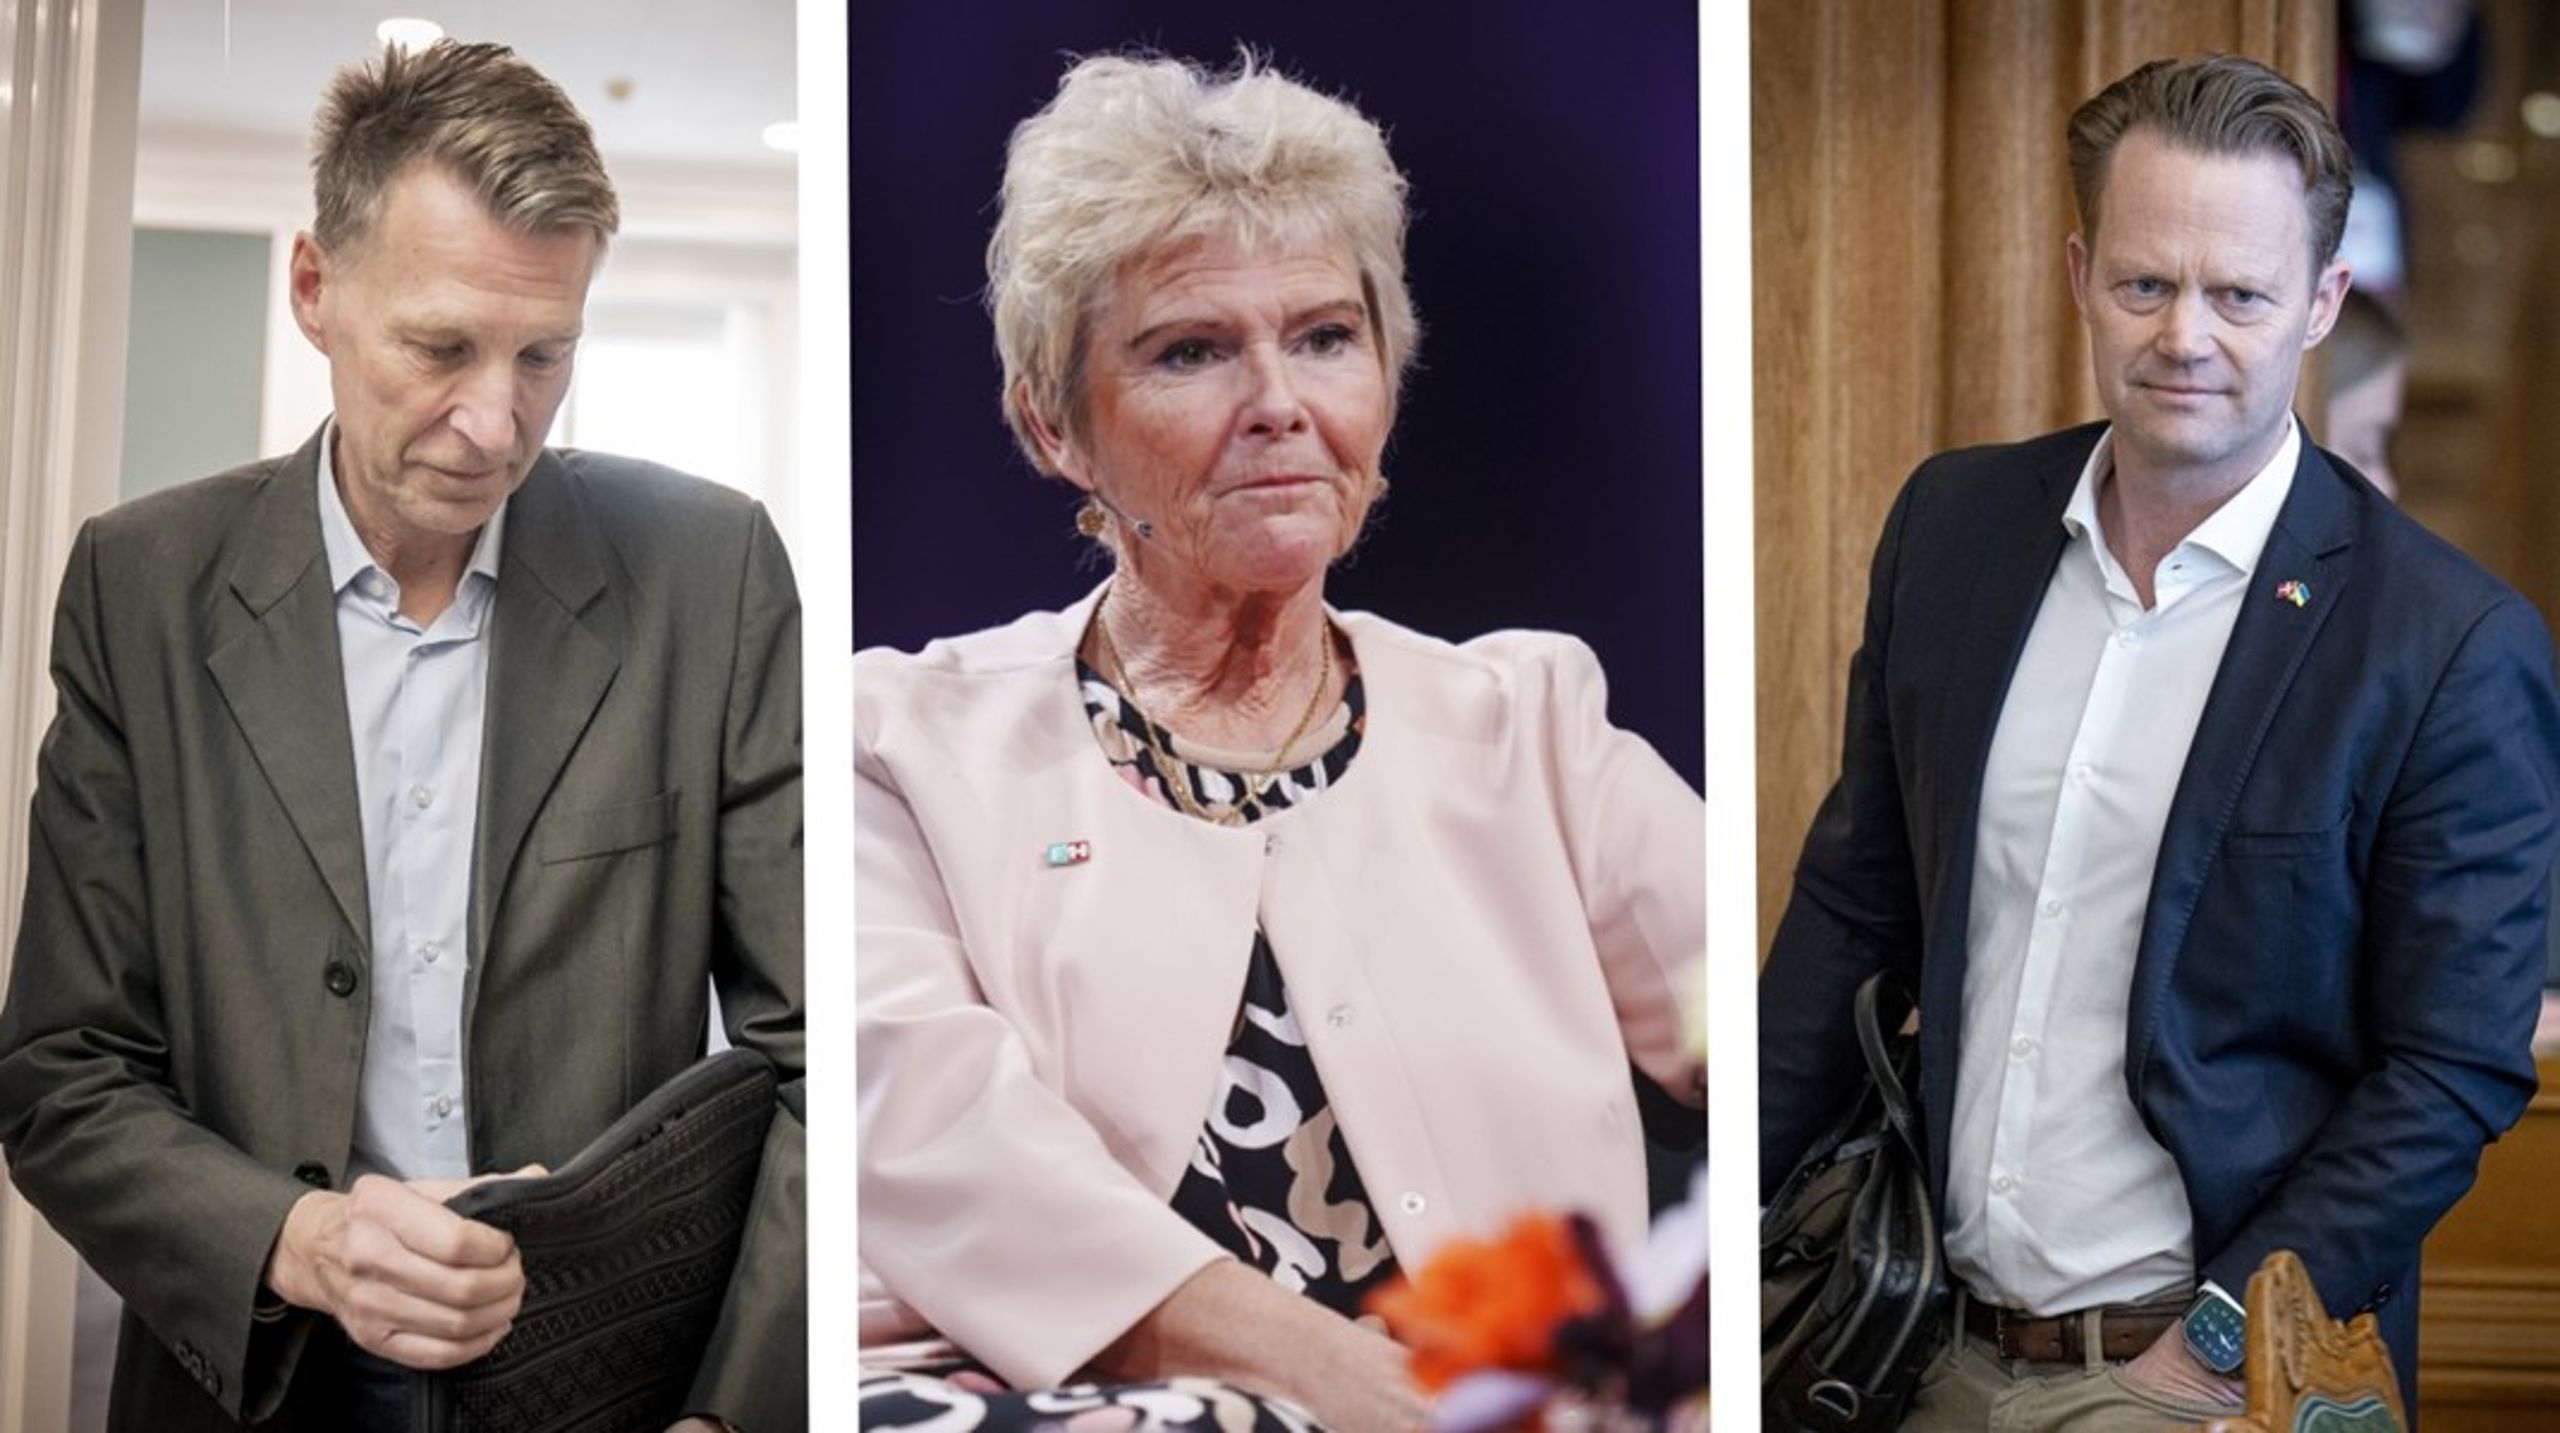 De tre sager med Lizette Risgaard, Jon Stephensen (M) og Jeppe Kofod (S) udstiller generationskløften i ligestillingsdiskussionen, skriver Rikke Viemose.